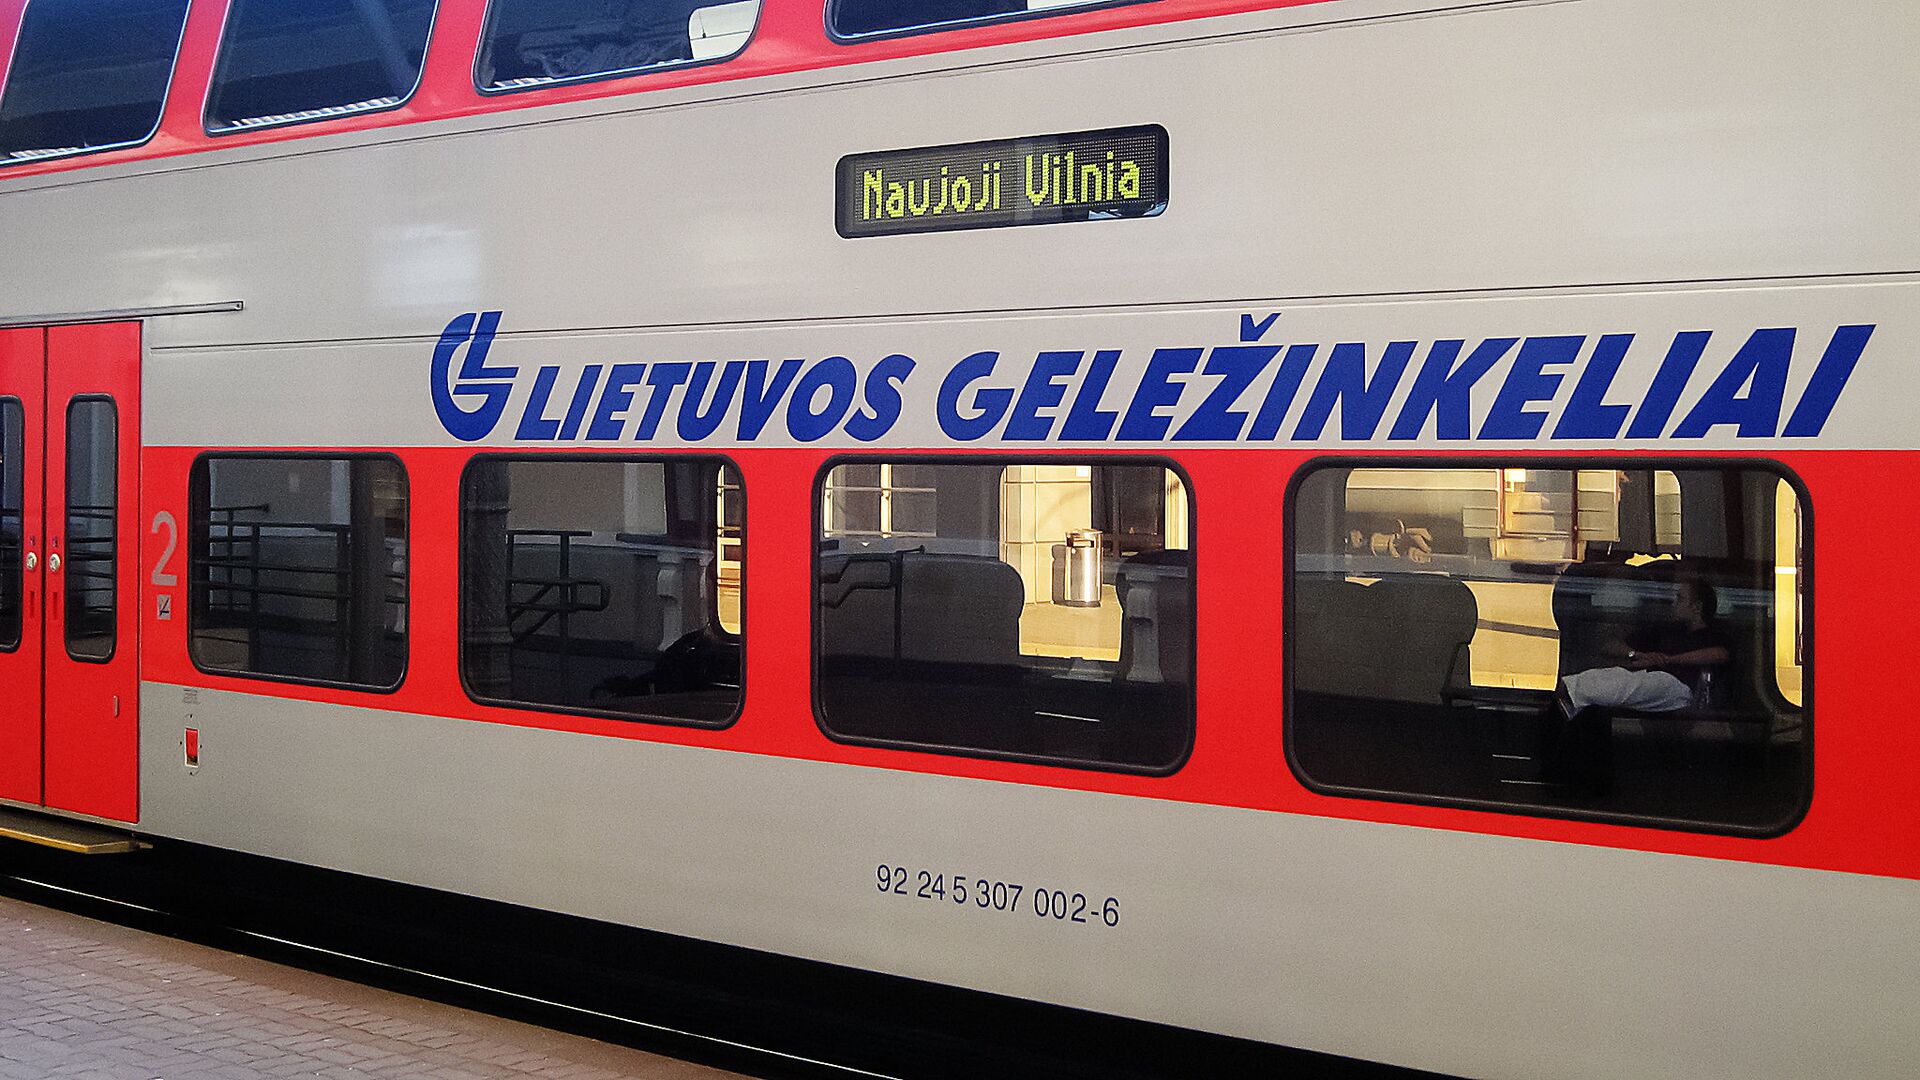 Elektrinis traukinys Vilnius-Trakai, archyvinė nuotrauka - Sputnik Lietuva, 1920, 07.02.2021